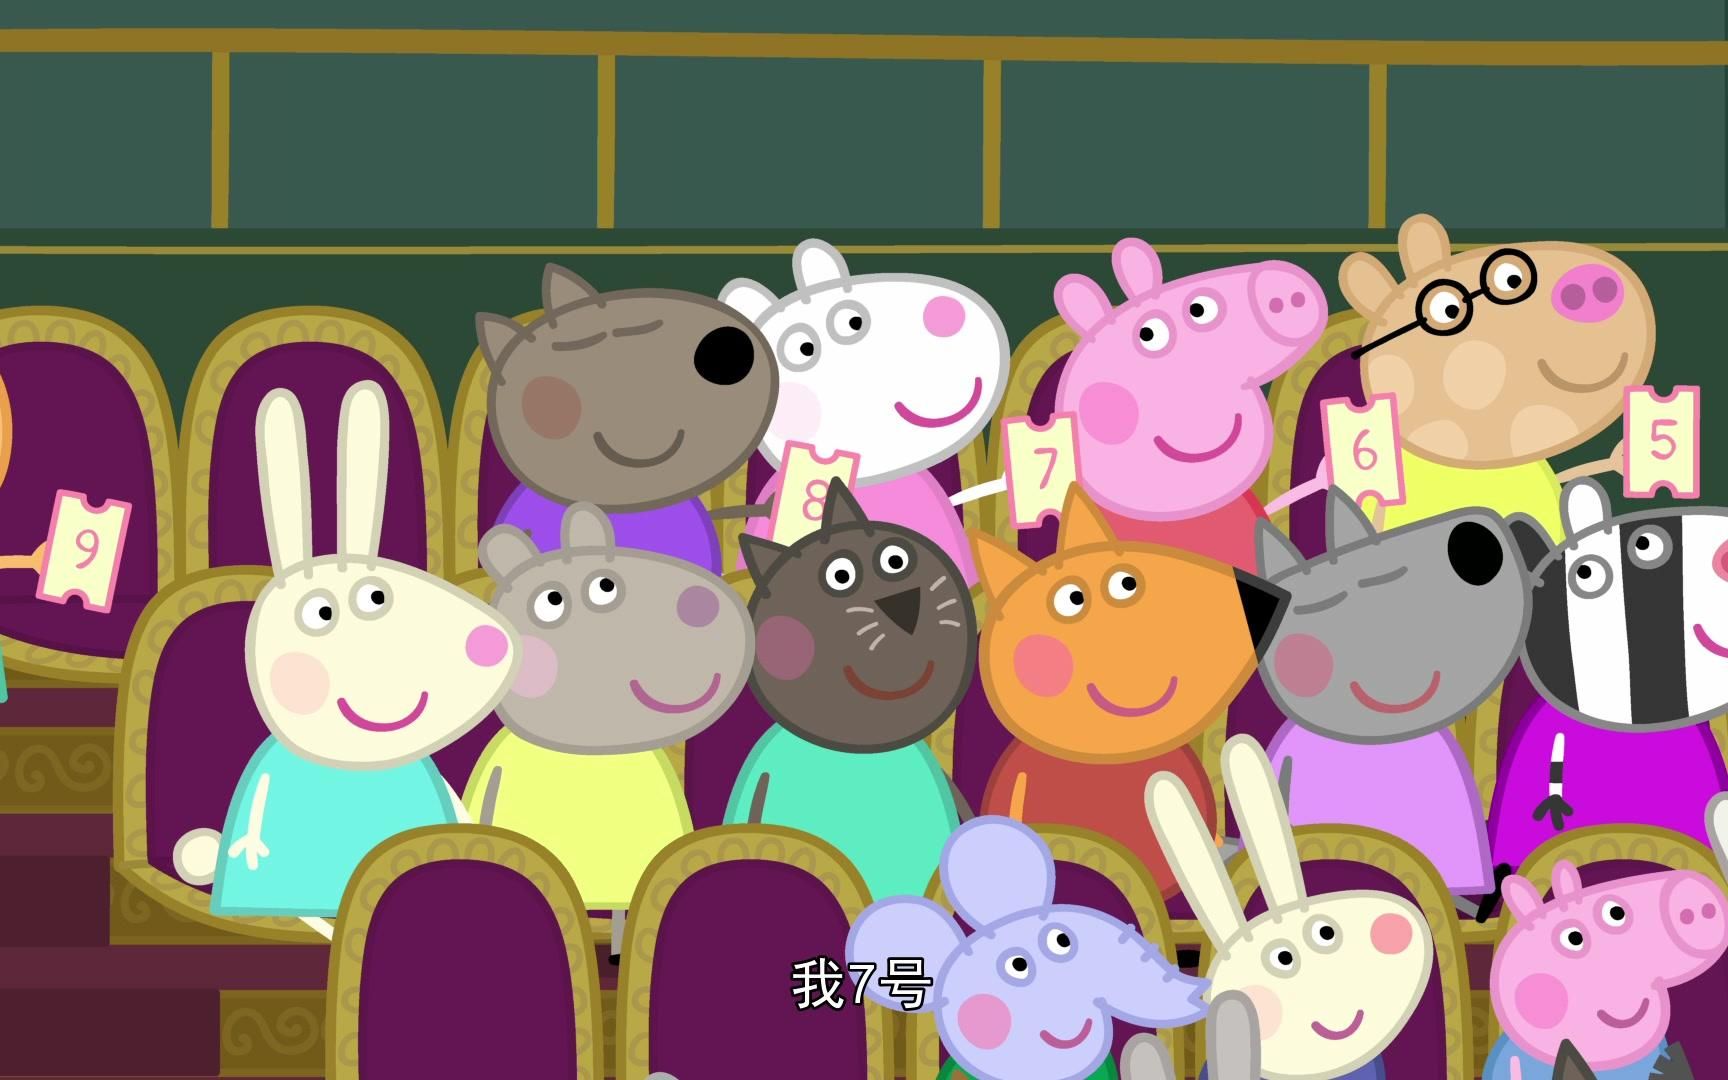 小猪佩奇第五季:佩奇与同学一起去看话剧,会发生什么有趣的事呢